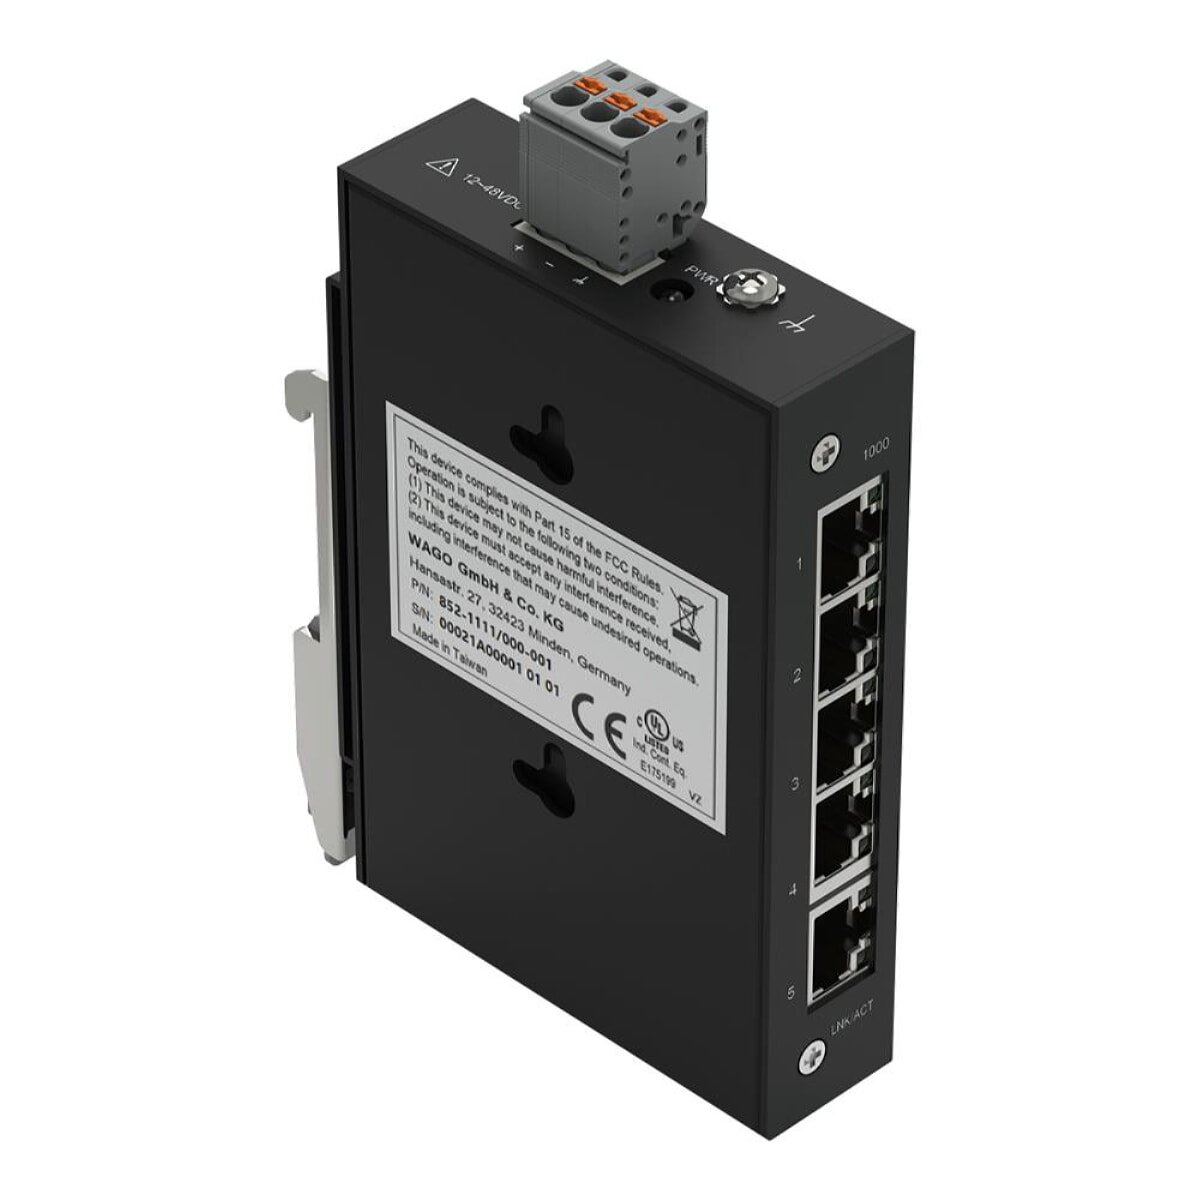 WAGO Industrial-ECO-Switch 5 Ports 1000Base-T schwarz 852-1111/000-001